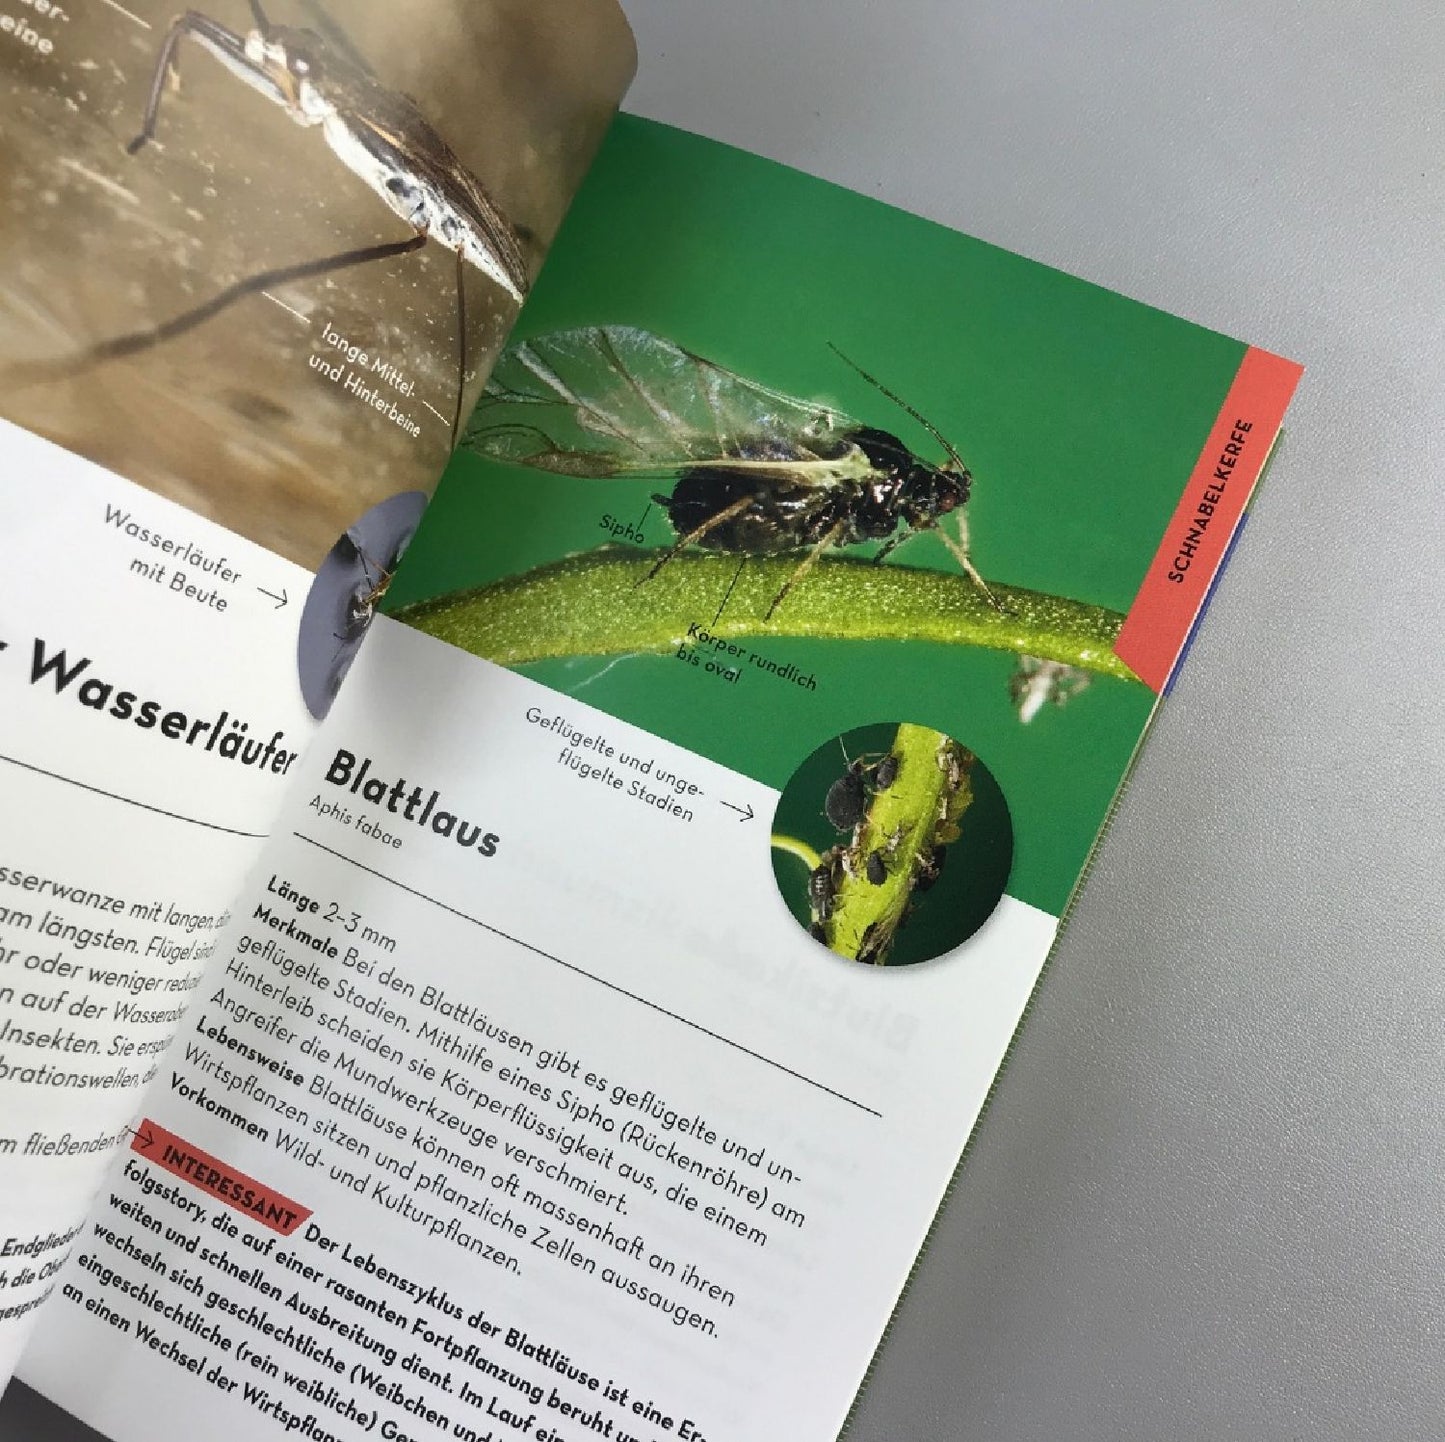 Basic Insekten (Dr. Roland Gerstmeier)